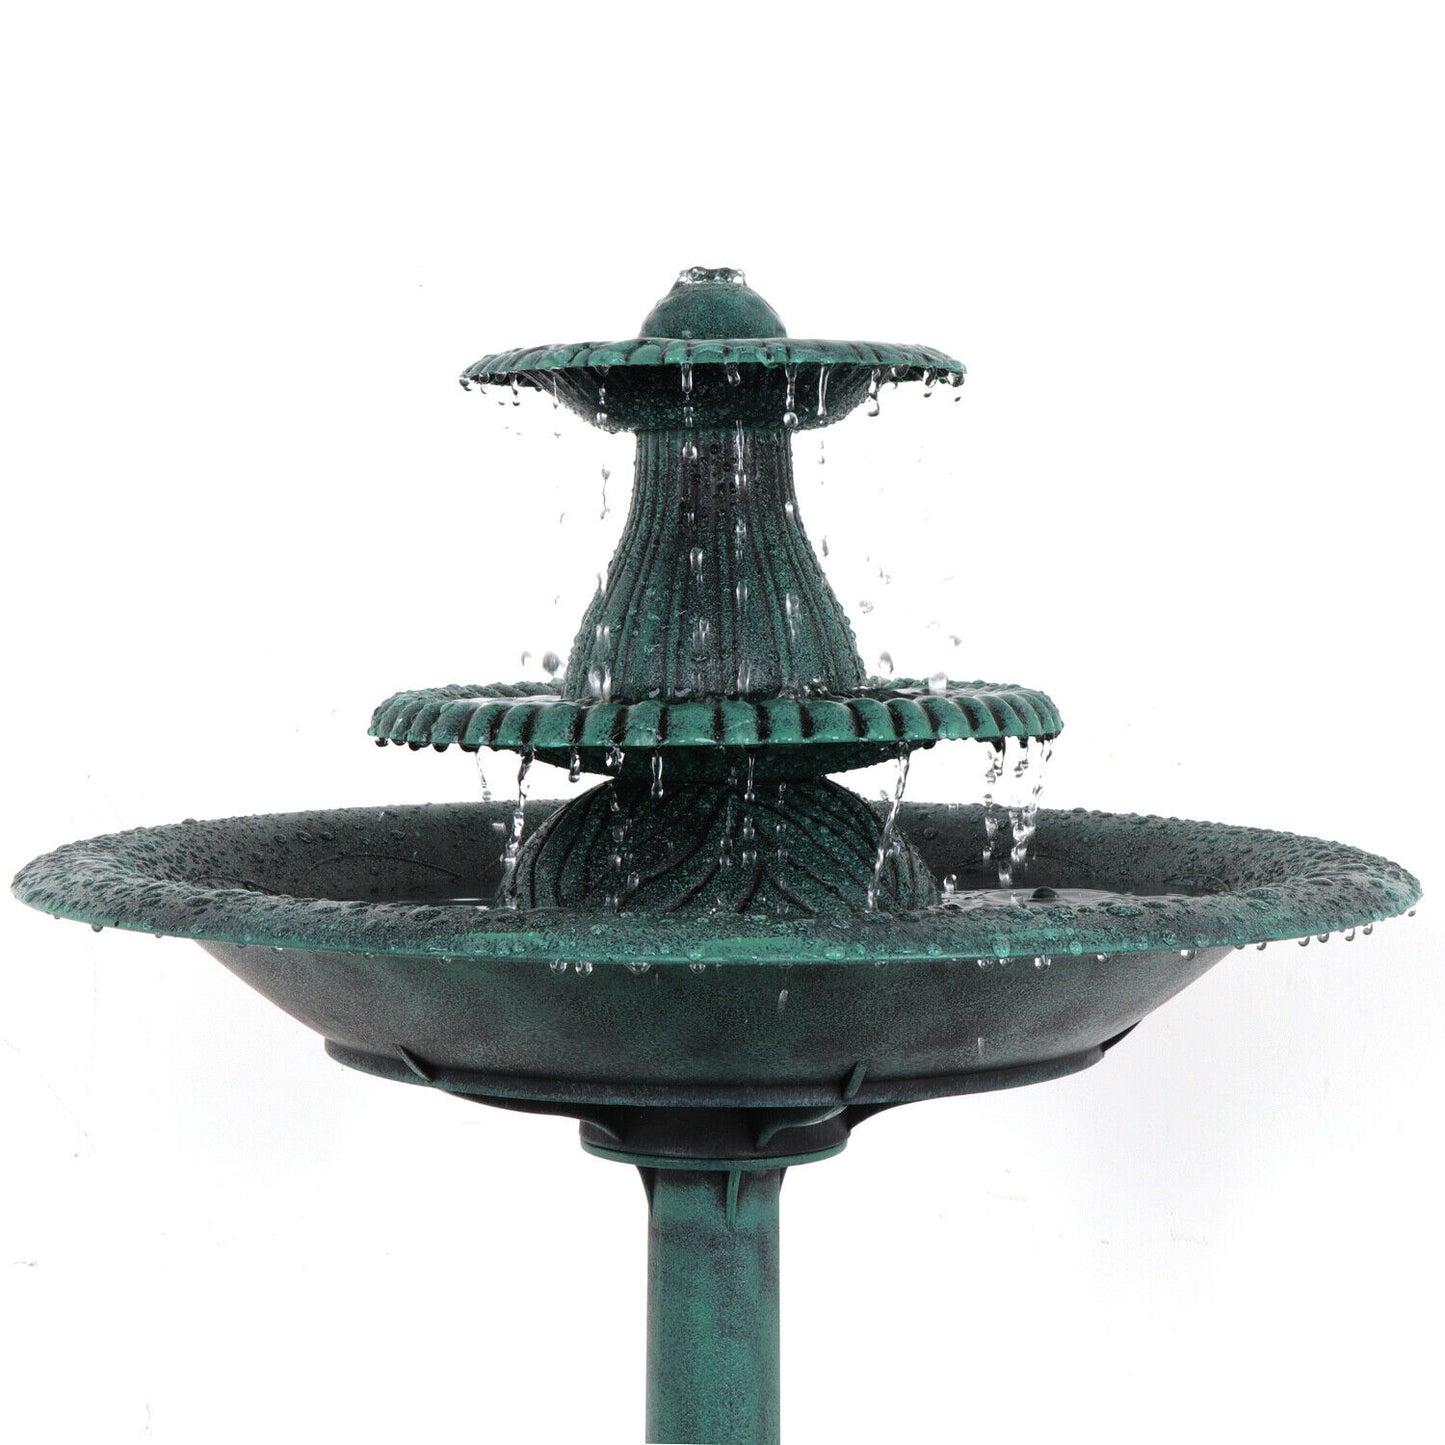 3 Tier Bird Bath Fountain Garden Pedestal Outdoor Water Fountain W/Pump Decor